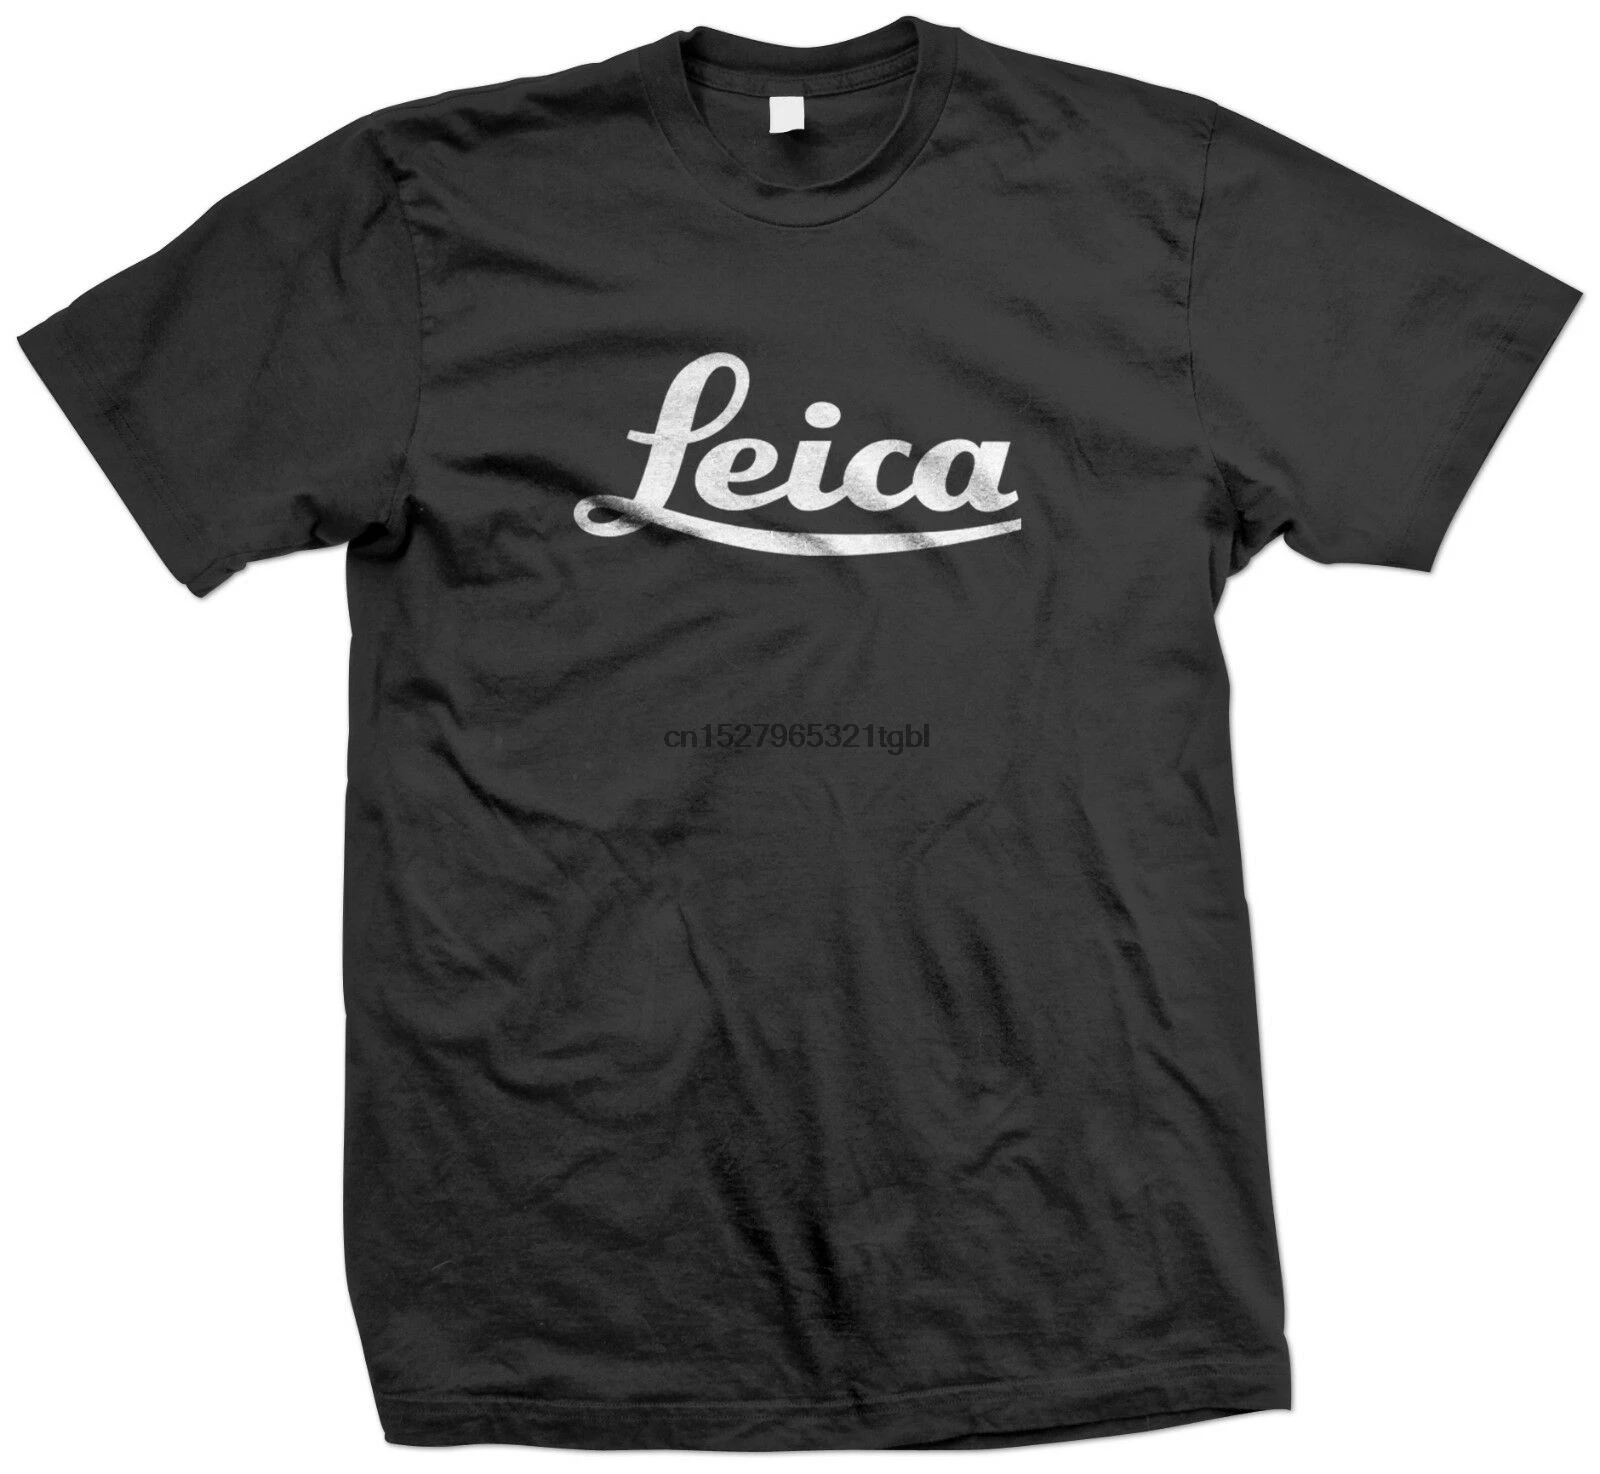 Camiseta con logotipo de cámara Leica, talla S M L Xl 2Xl 3Xl(1)